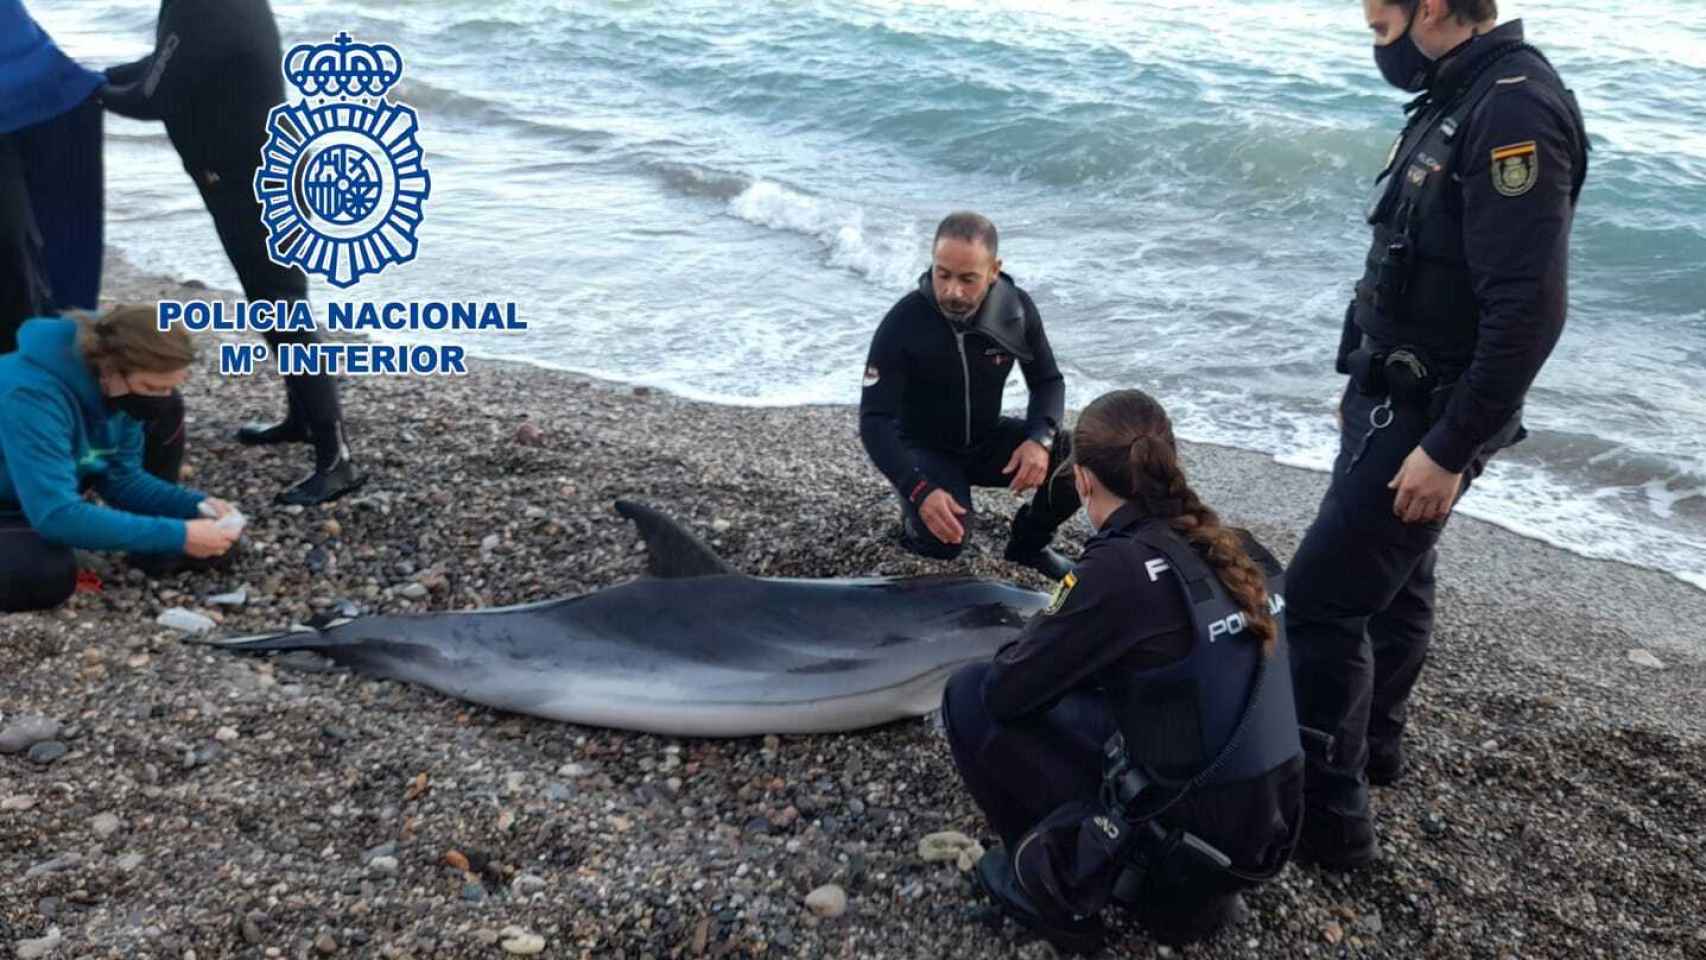 La Policía Nacional salva a un delfín varado en una playa de Almería: así fue el exitoso rescate